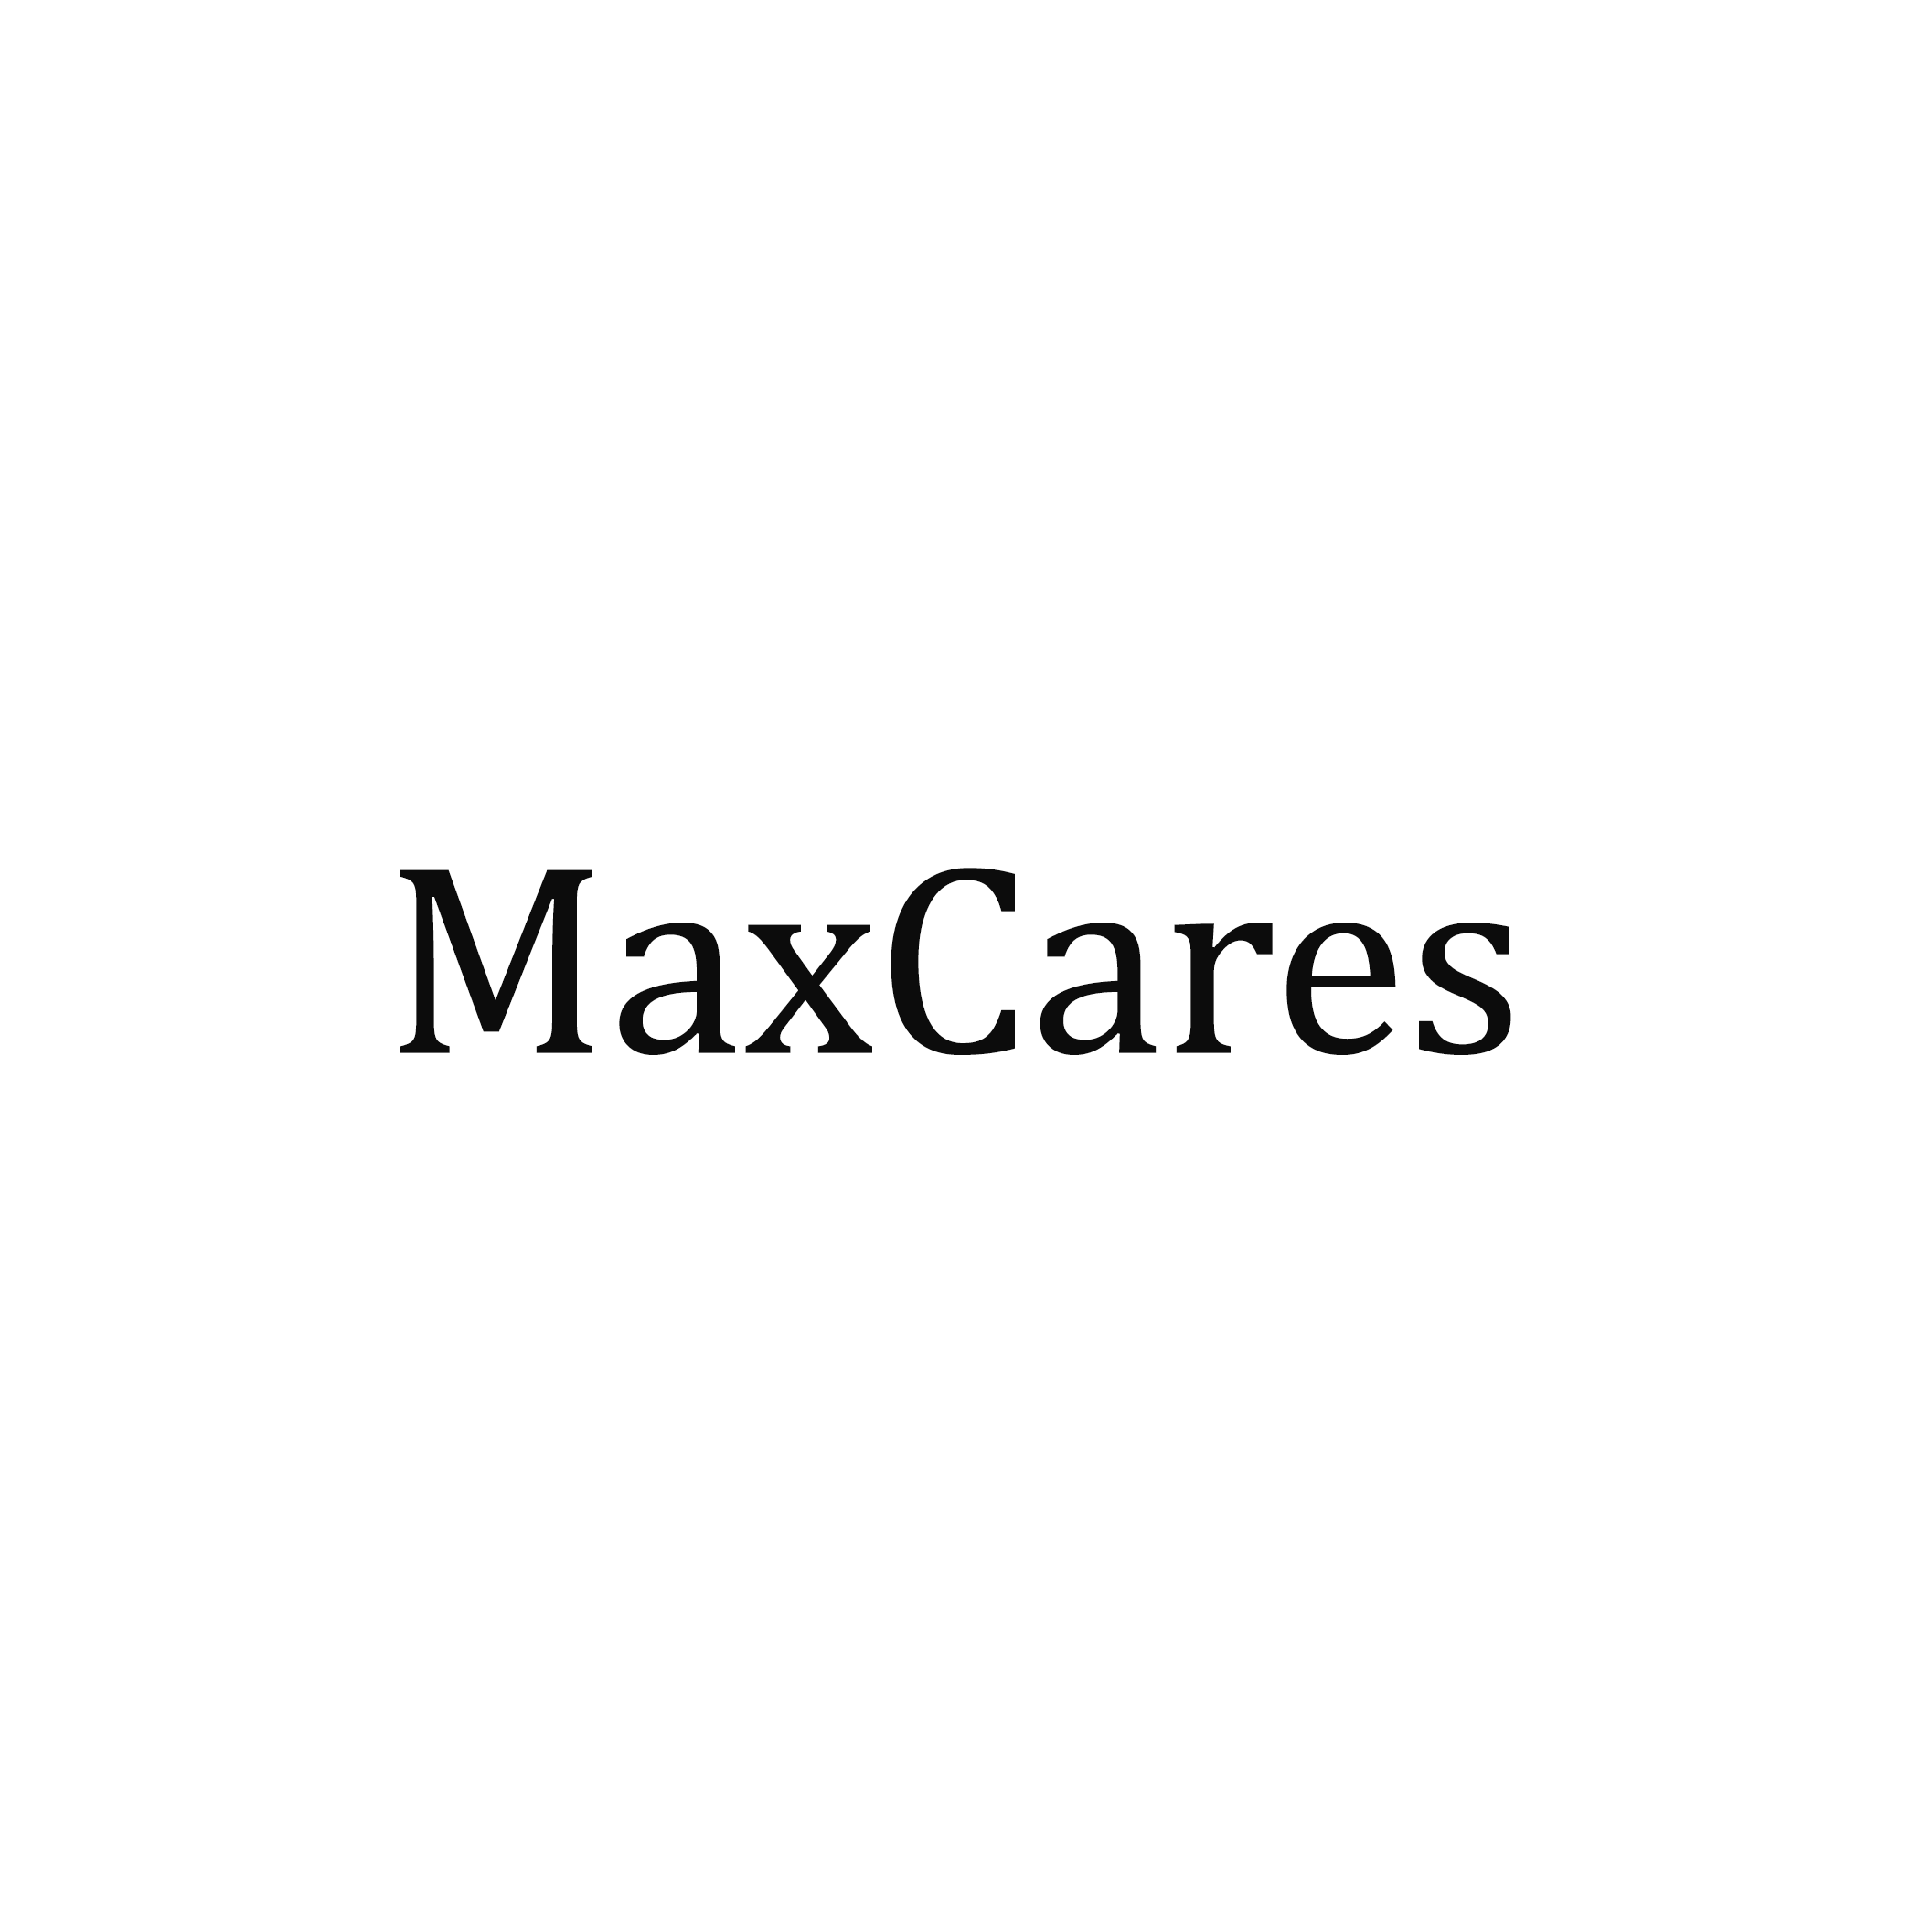 Brand: MaxCares